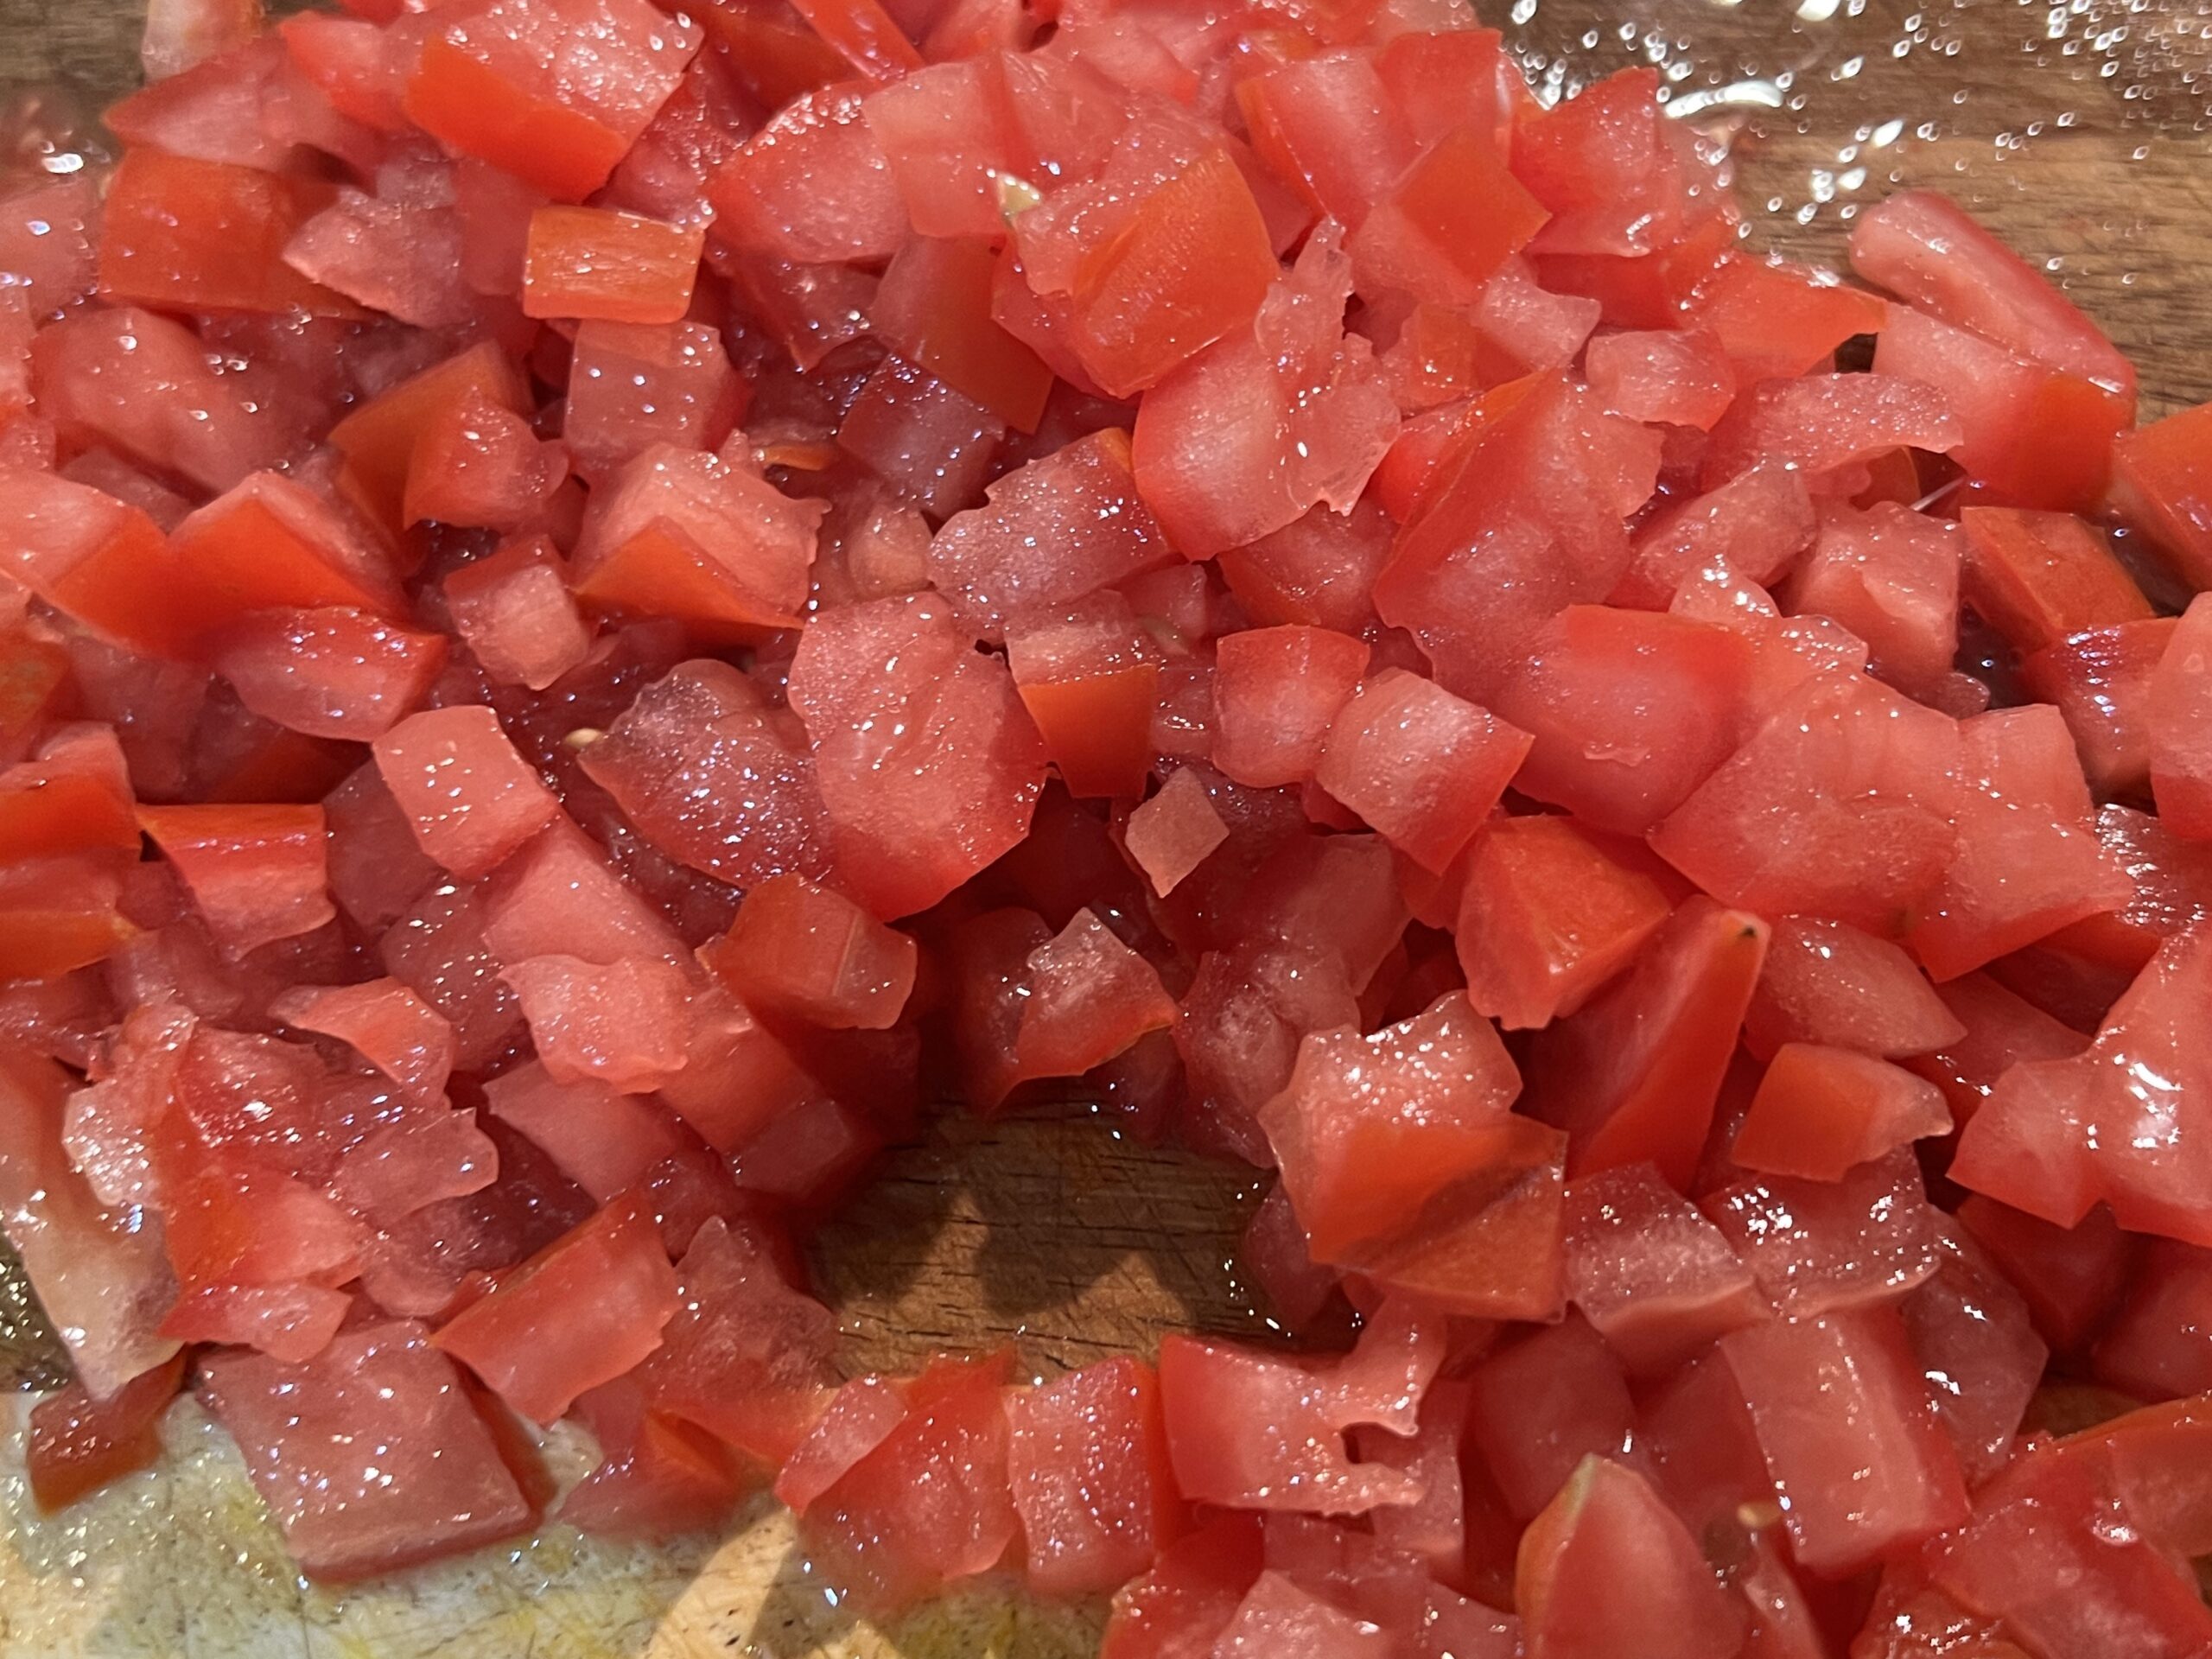 Homemade Pico de Gallo Recipe (Fresh Tomato Salsa)